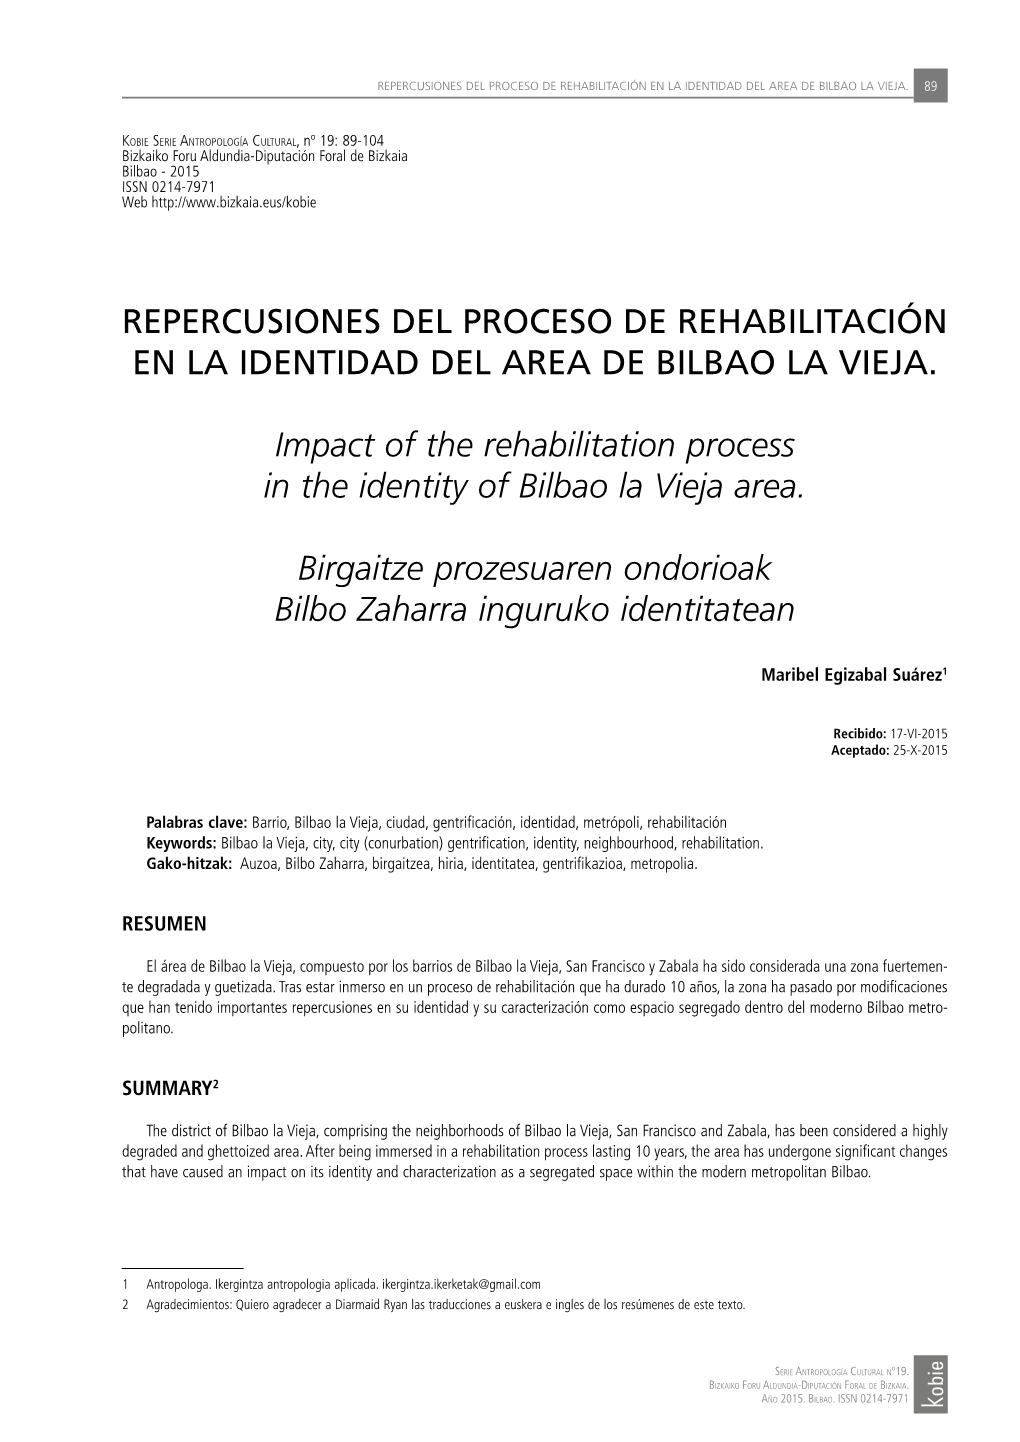 REPERCUSIONES DEL PROCESO DE REHABILITACIÓN EN LA IDENTIDAD DEL AREA DE BILBAO LA VIEJA. Impact of the Rehabilitation Process